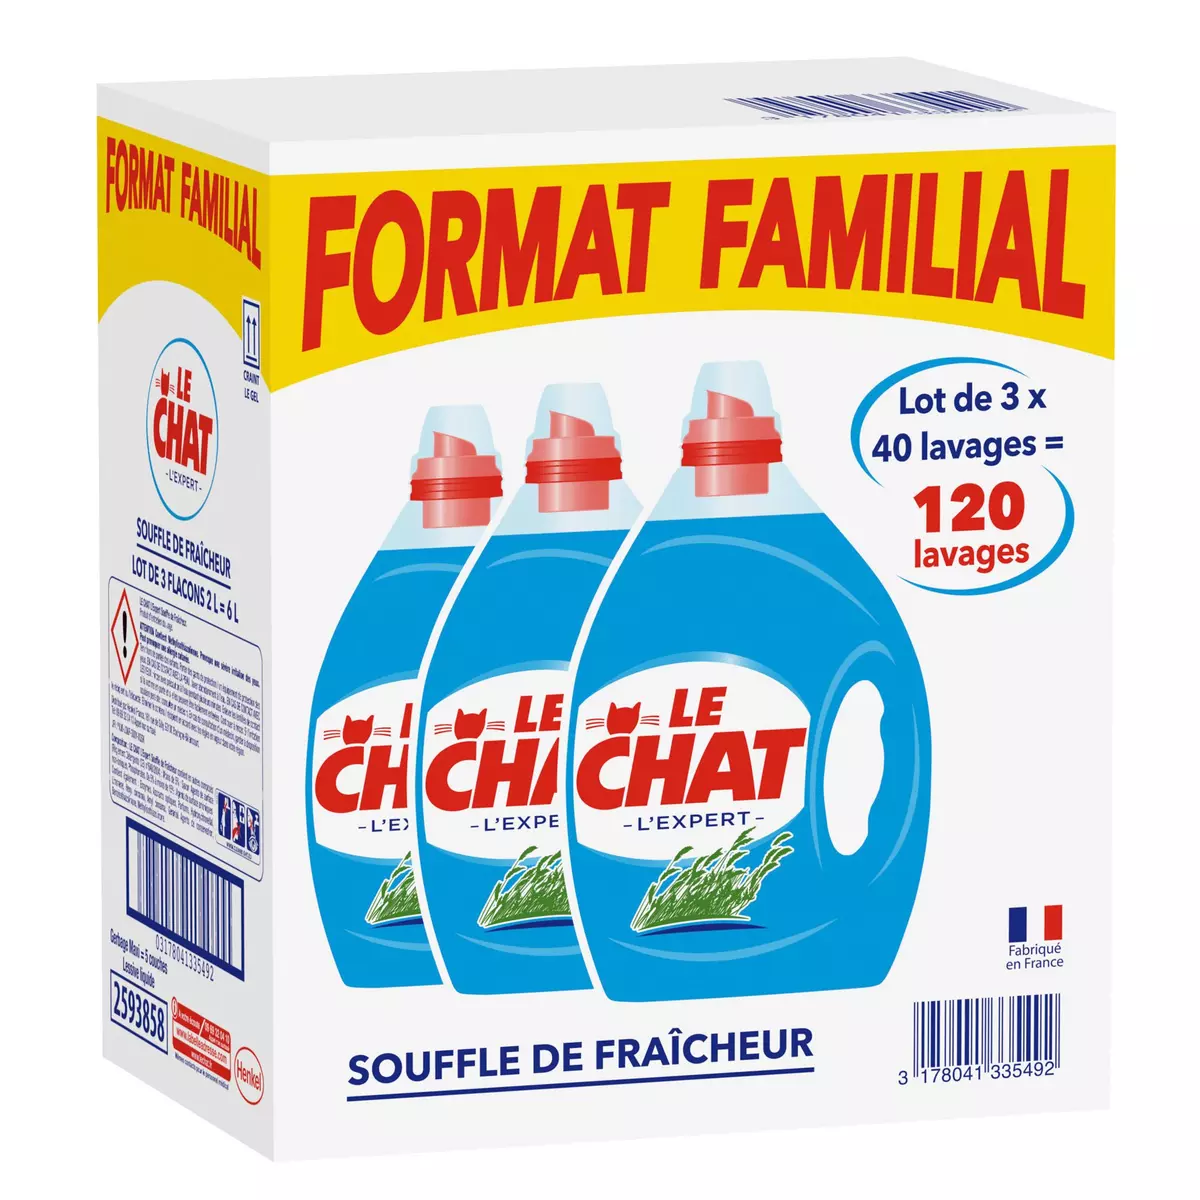 LE CHAT Lessive liquide souffle de fraîcheur format familial  120 lavages  3x2l